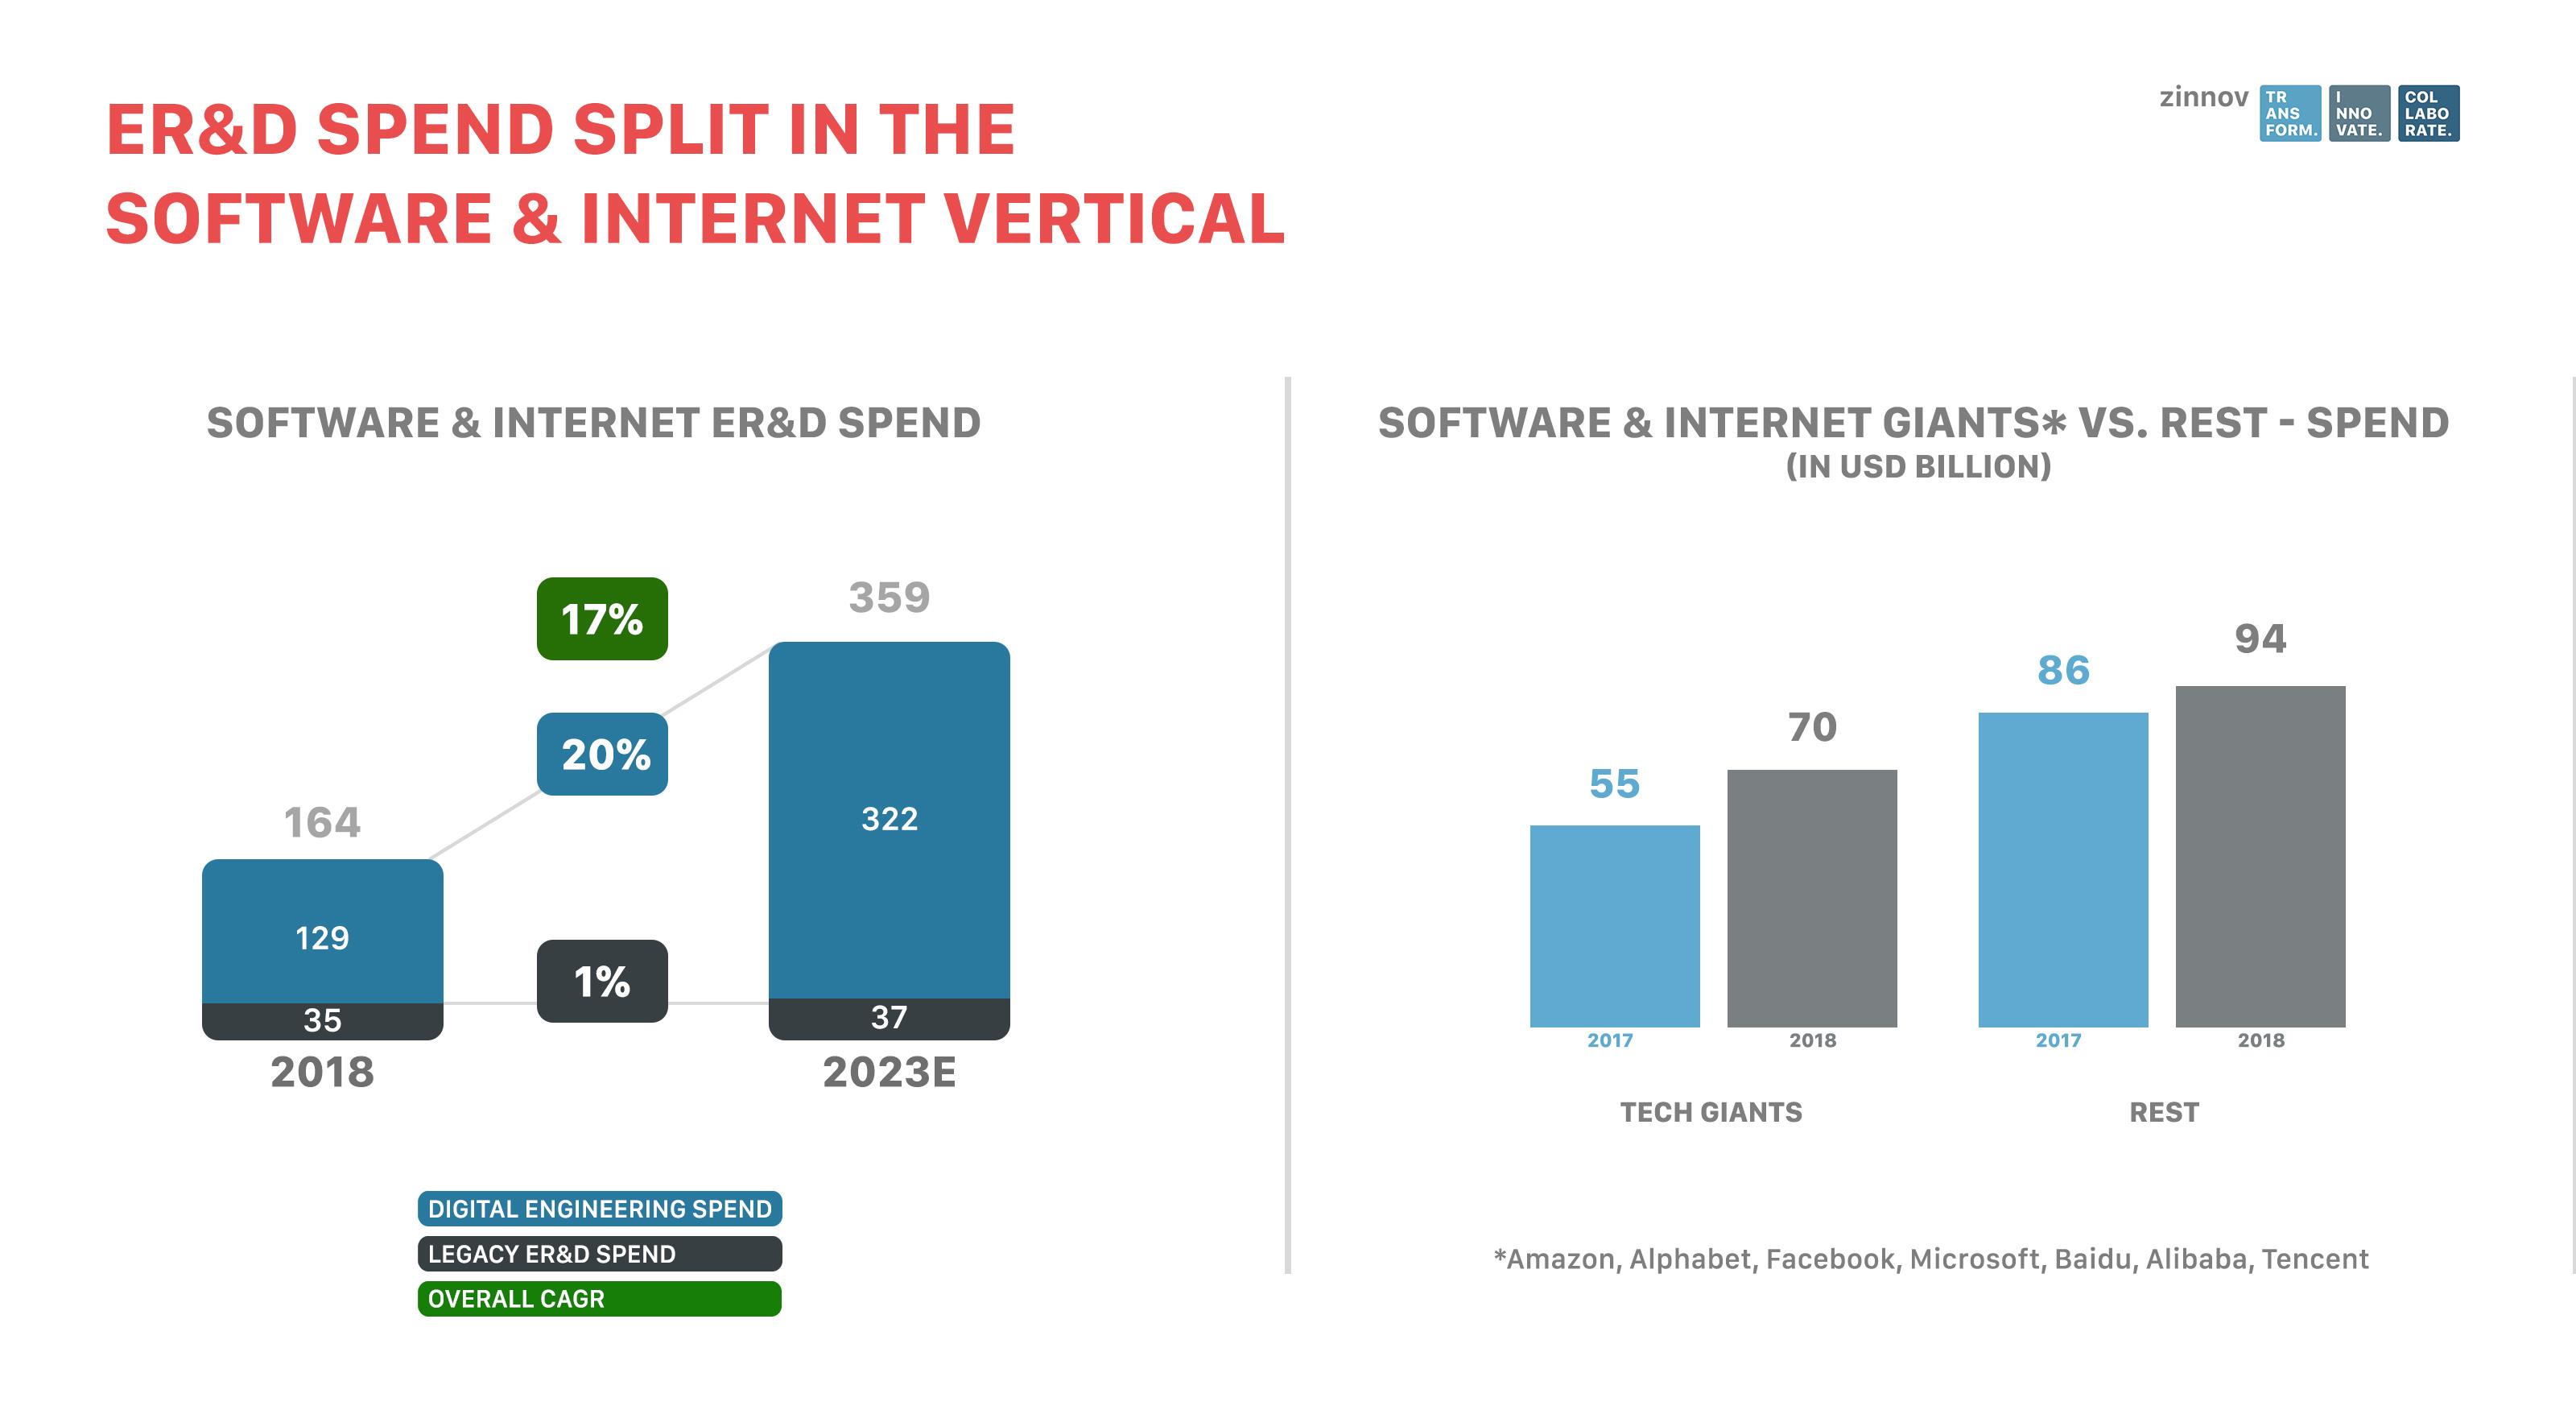 ER&D spend split in the software & internet vertical